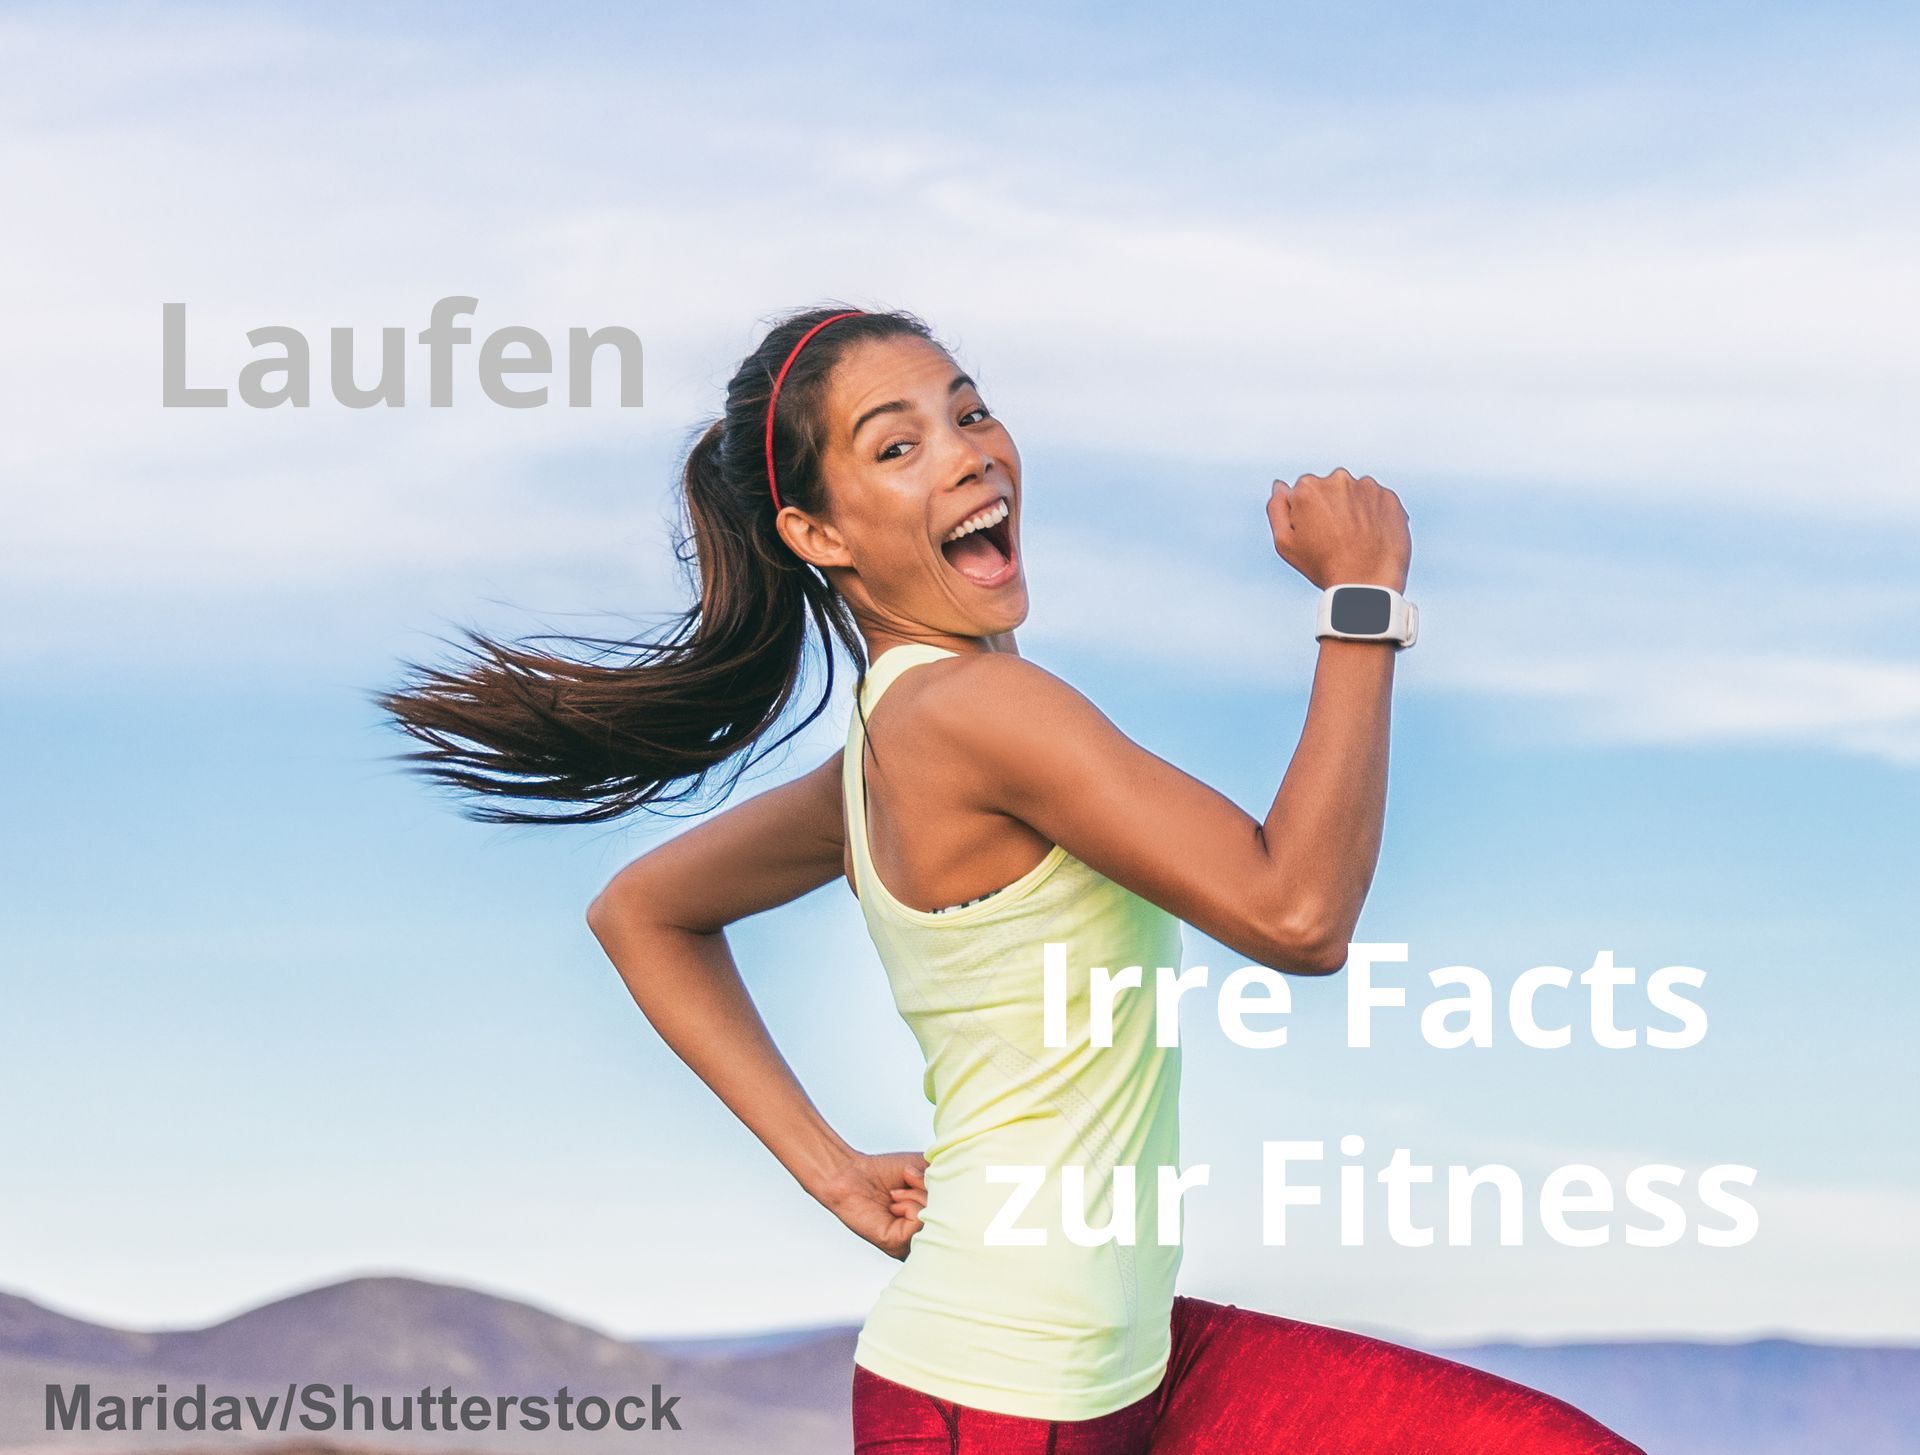 laufen - irre facts zur fitness